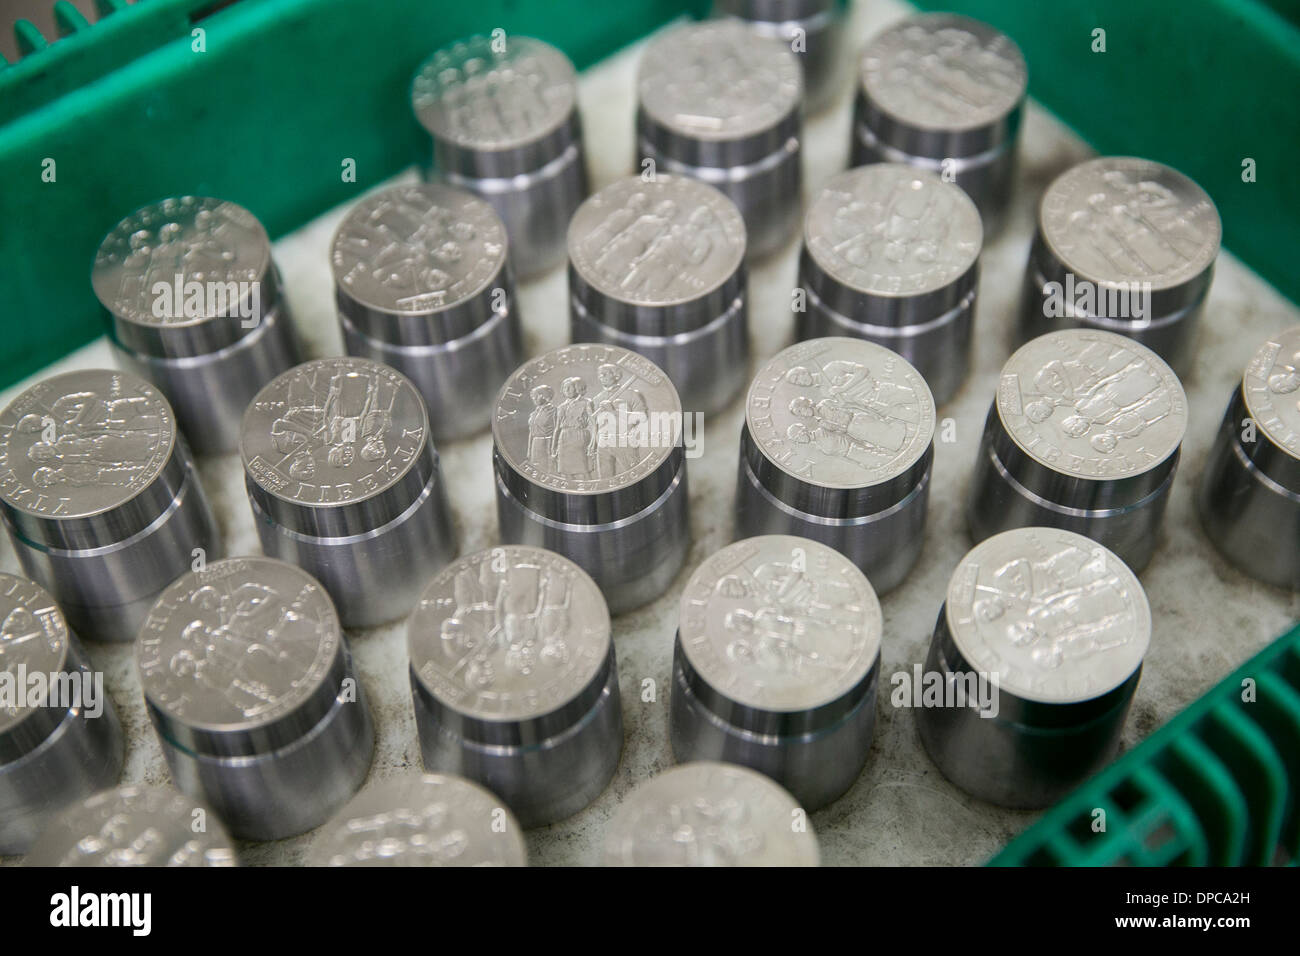 Coin outillage au Philadelphia branche de l'United States Mint. Banque D'Images